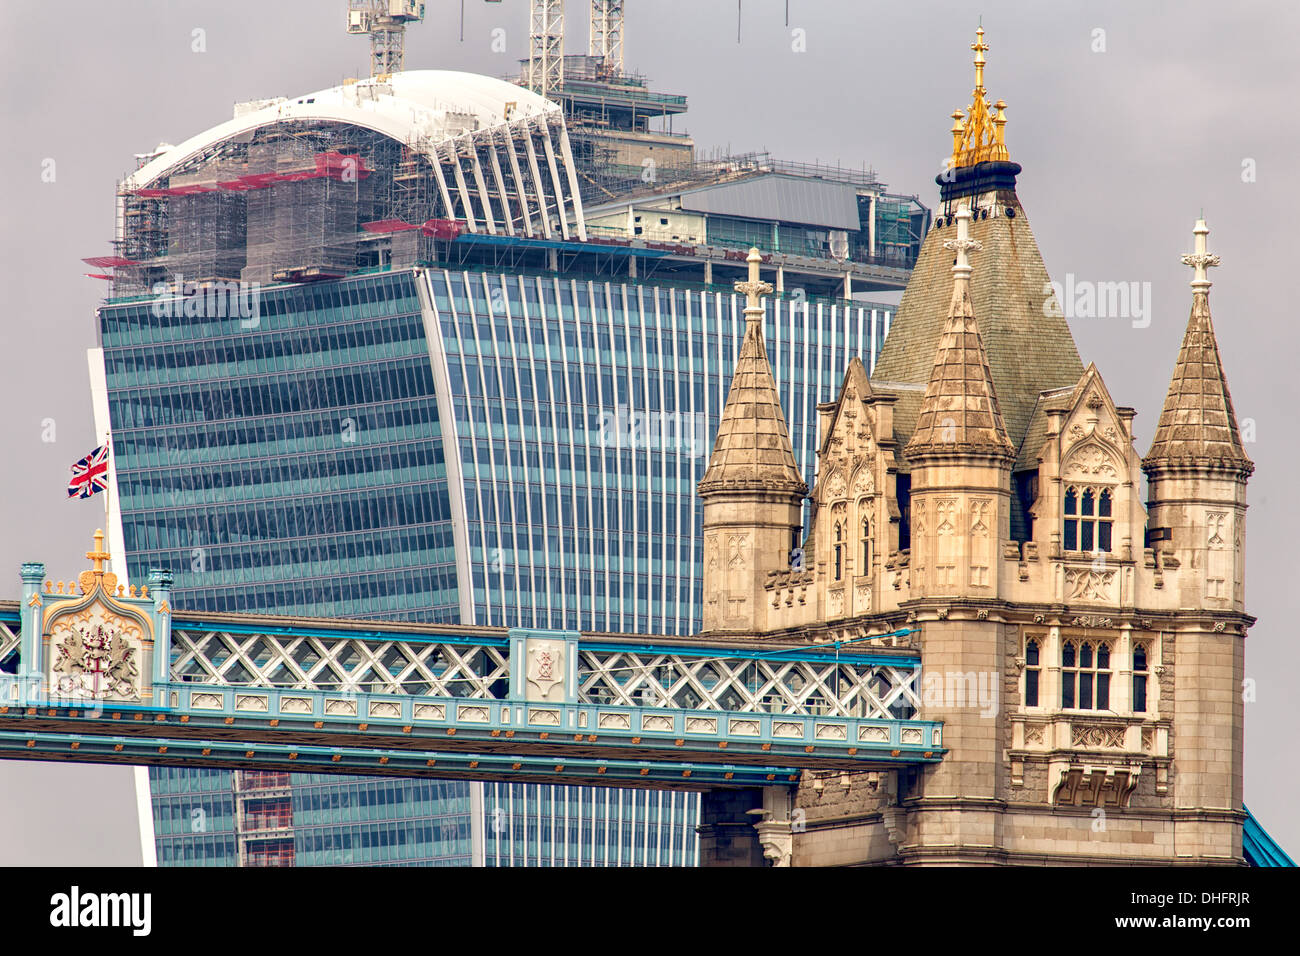 The London Walkie Talkie behind Tower Bridge Stock Photo